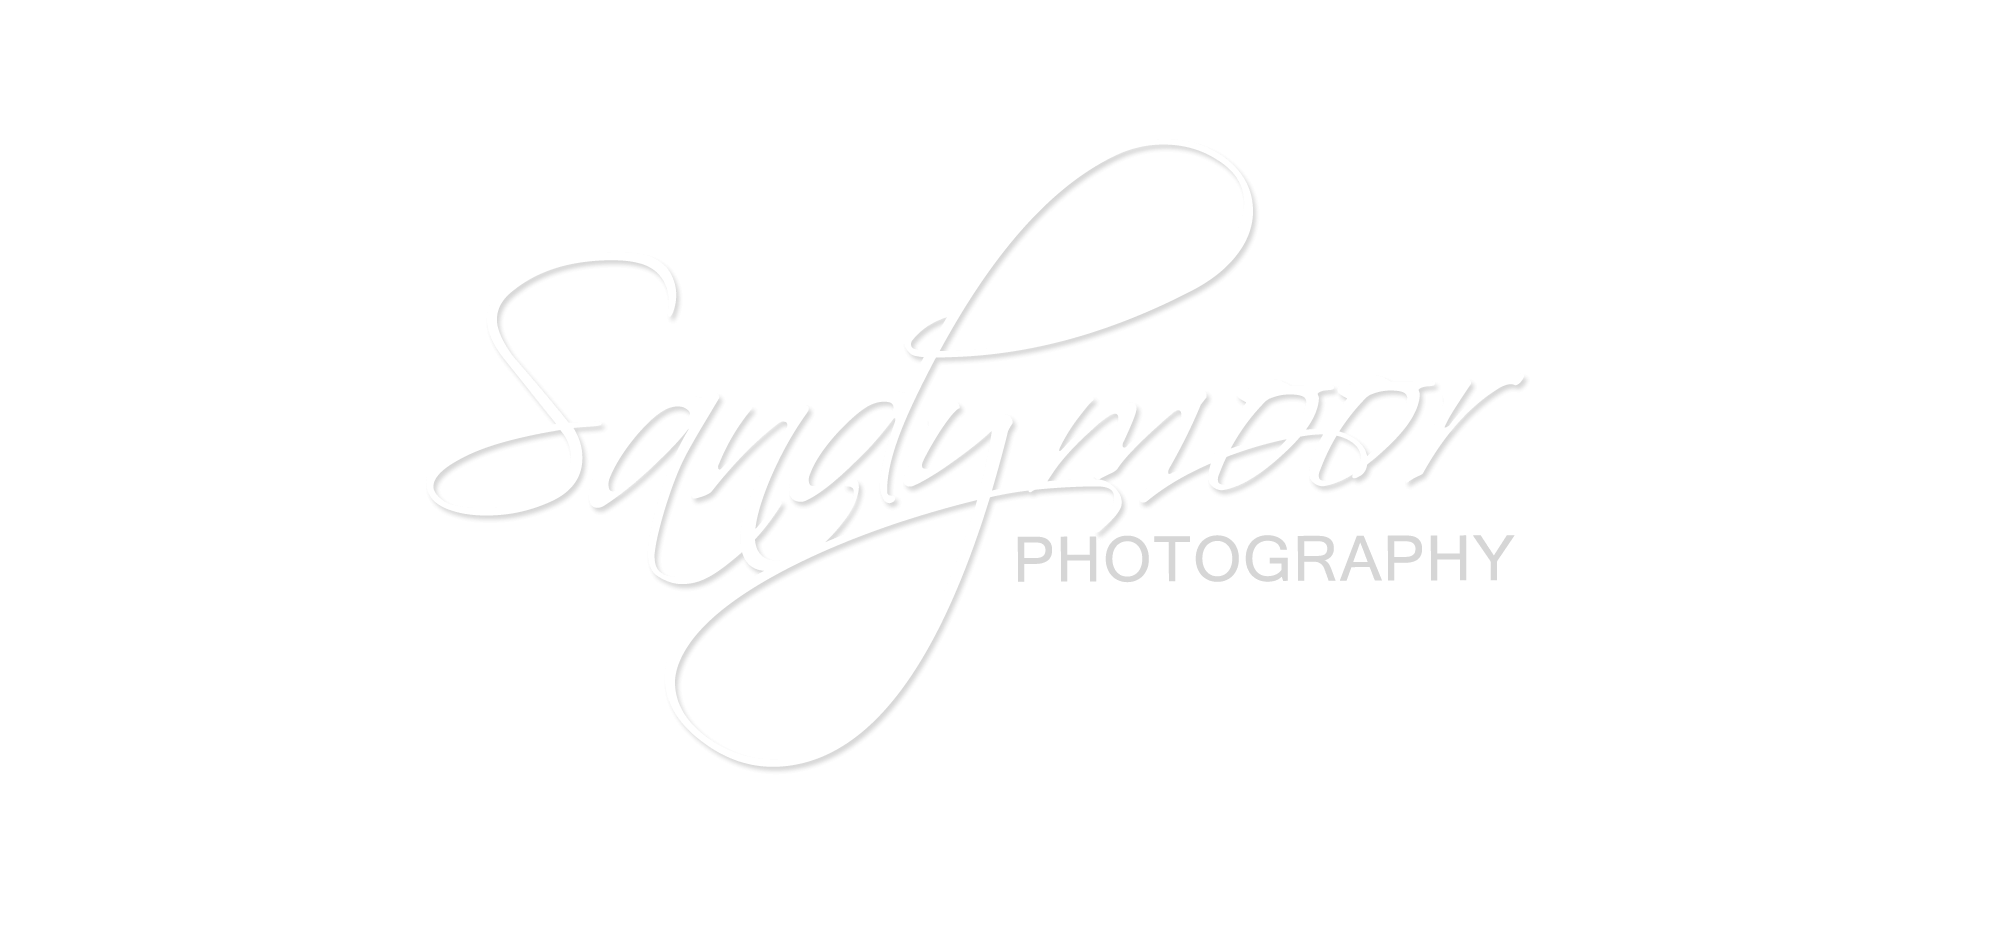 Sandymoor Photography